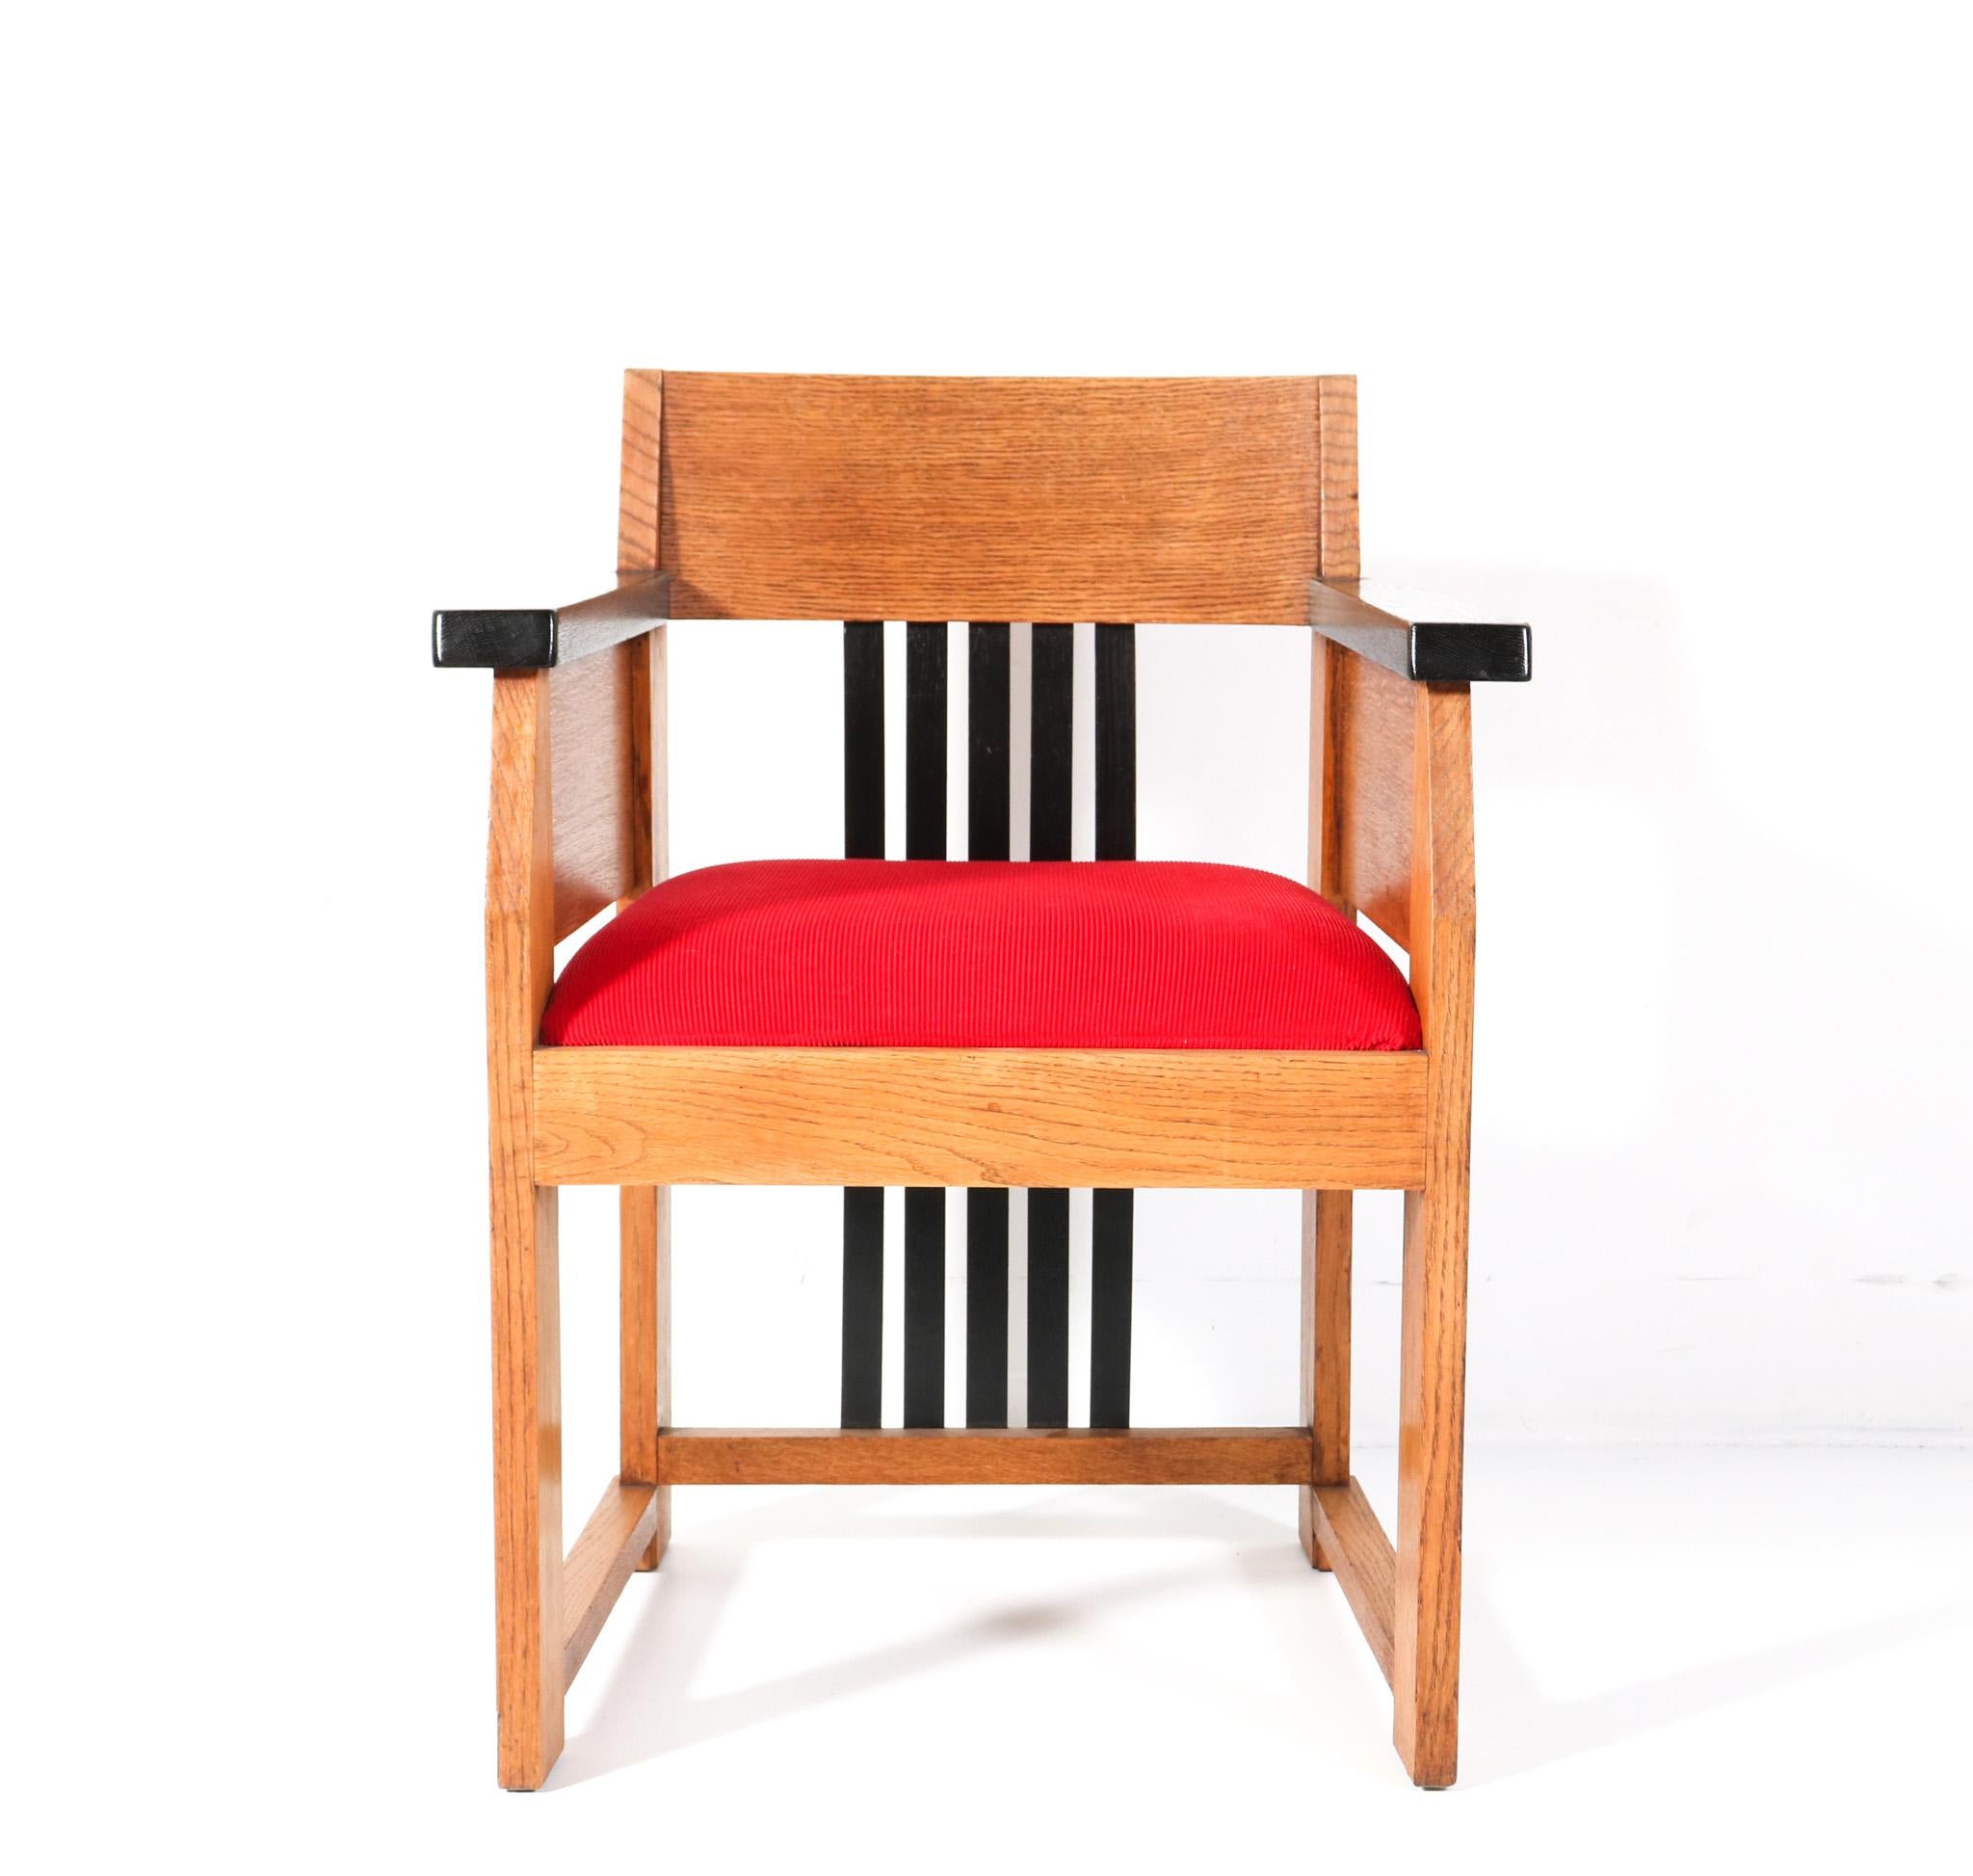 Prächtiger und äußerst seltener Art Deco Modernist Sessel.
Design von Hendrik Wouda für H. Pander & Zonen Den Haag.
Auffälliges niederländisches Design aus den 1920er Jahren.
Massives Eichengestell mit original schwarz lackierter Rückenlehne und